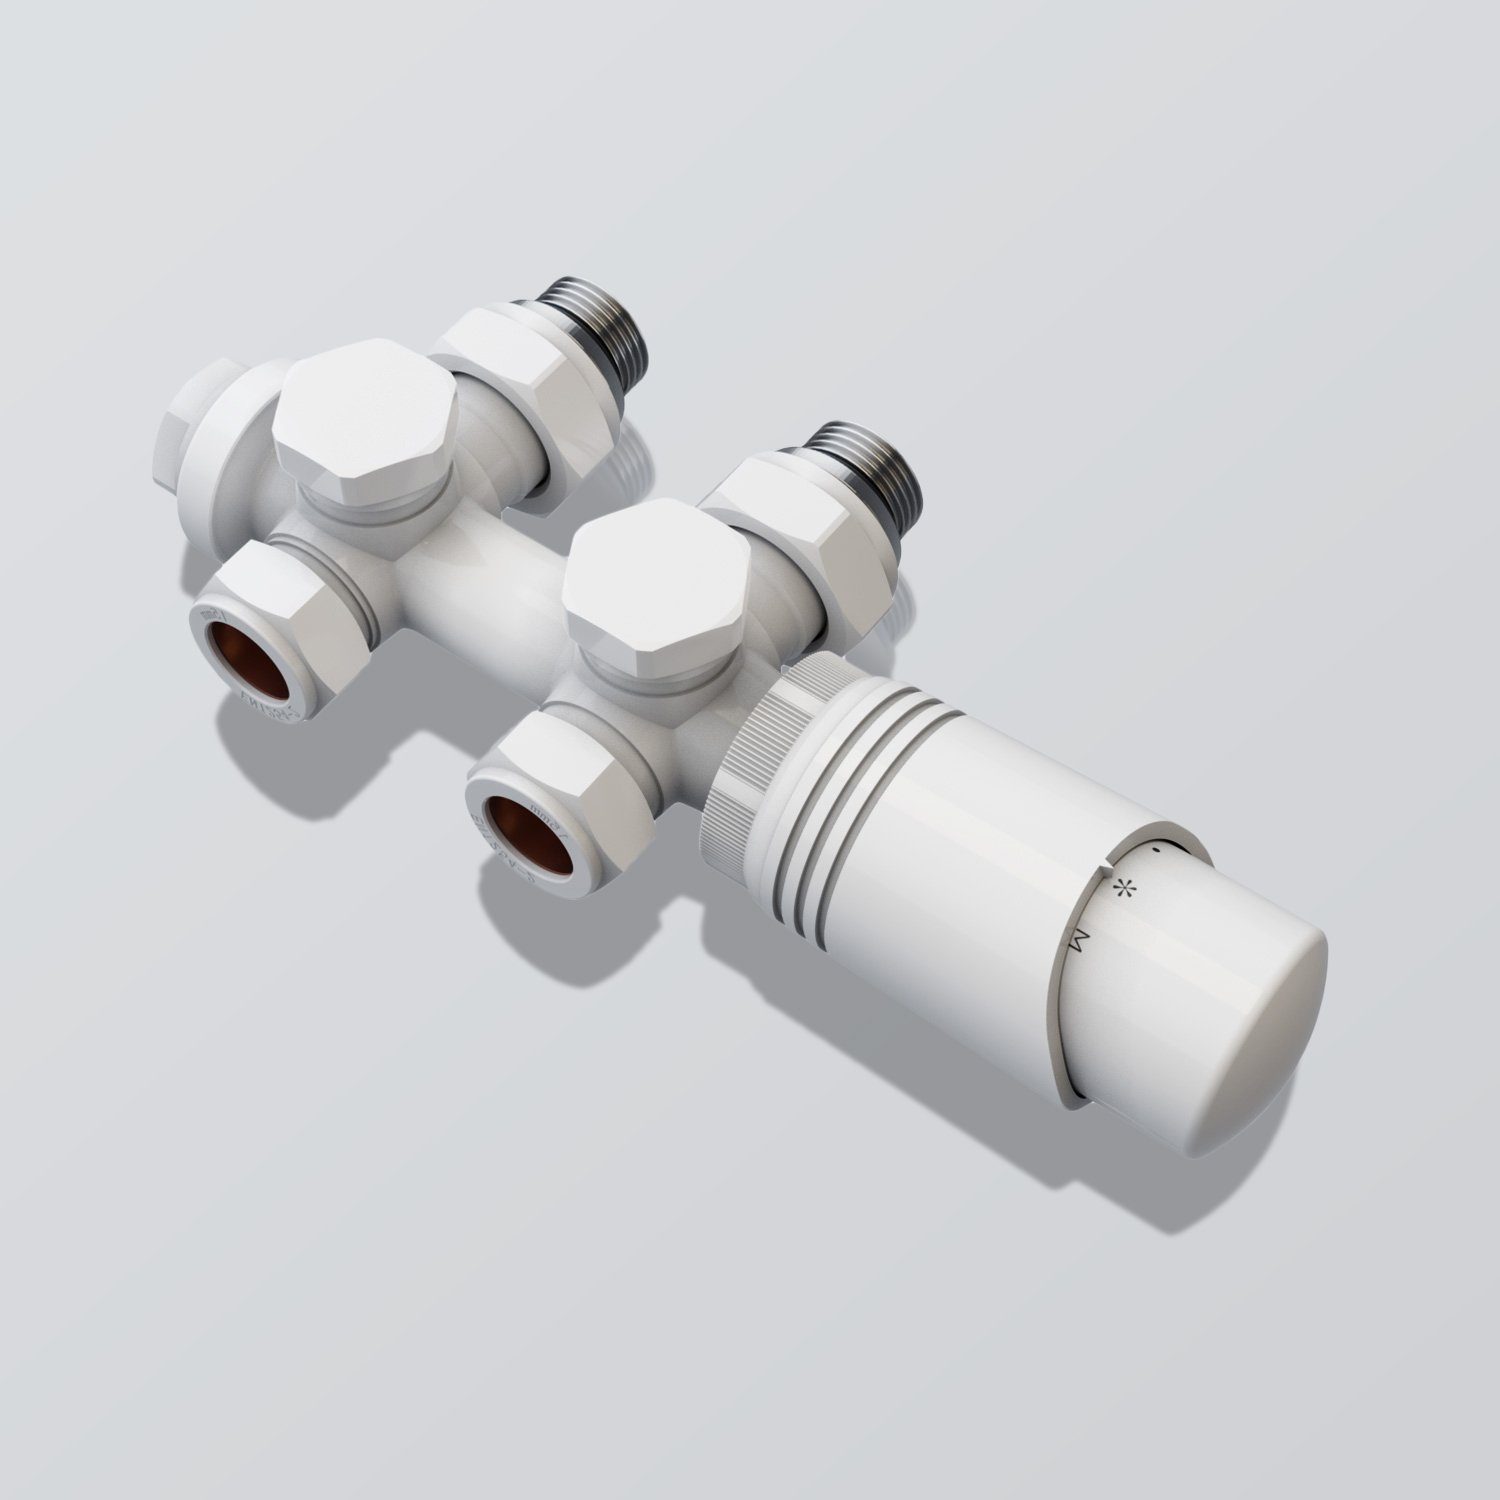 ELEGANT Heizkörperthermostat Multiblock Set für Heizkörper Anschlussarmatur Eck- und Durchgangsform mit Thermostatkopf, 50mm G 1/2", mit Thermostatkopf, 50mm G 1/2" Weiß